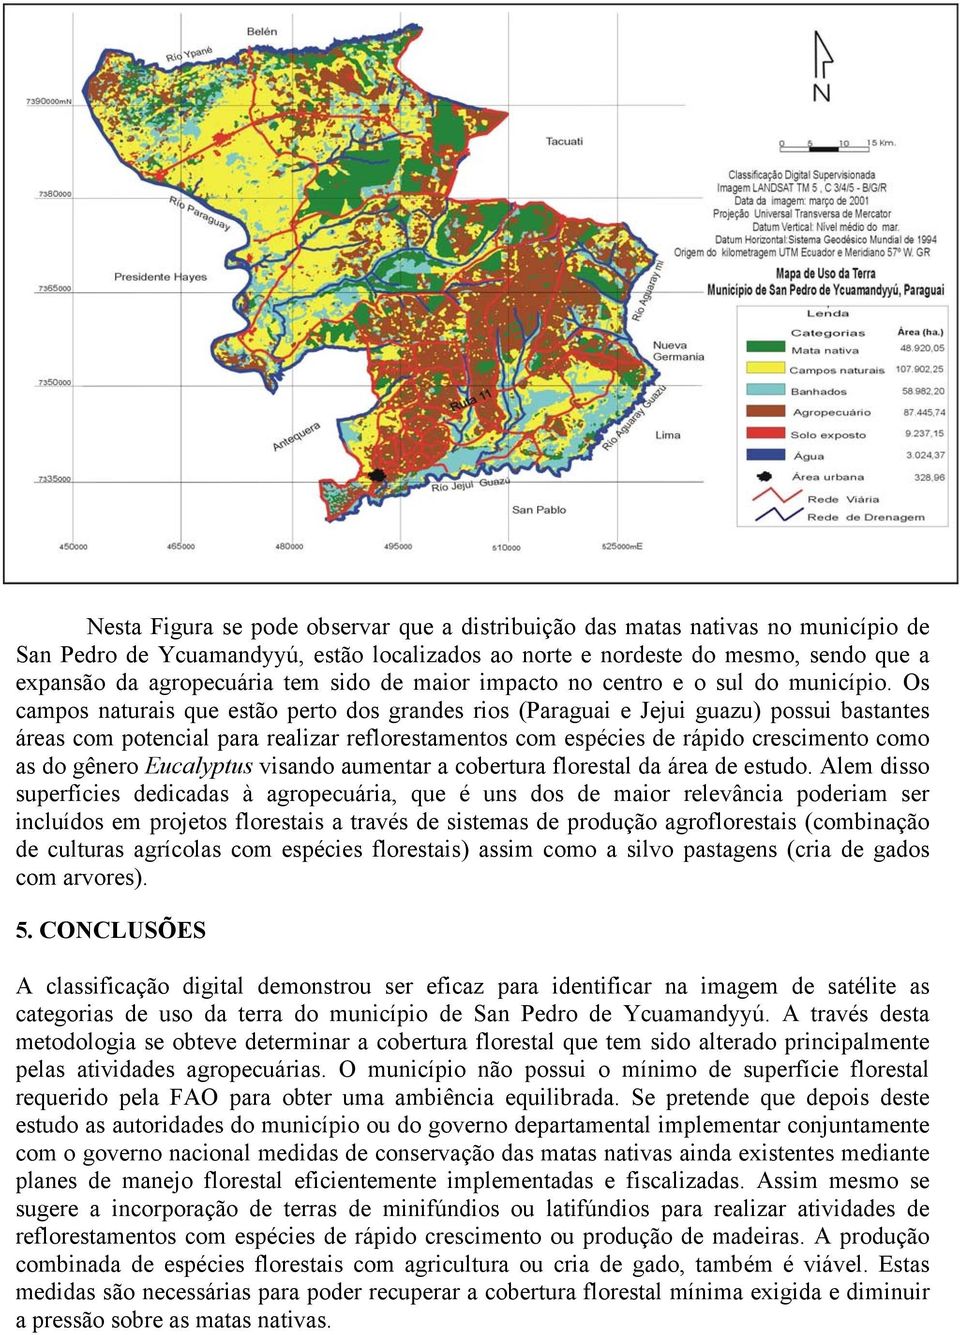 Os campos naturais que estão perto dos grandes rios (Paraguai e Jejui guazu) possui bastantes áreas com potencial para realizar reflorestamentos com espécies de rápido crescimento como as do gênero